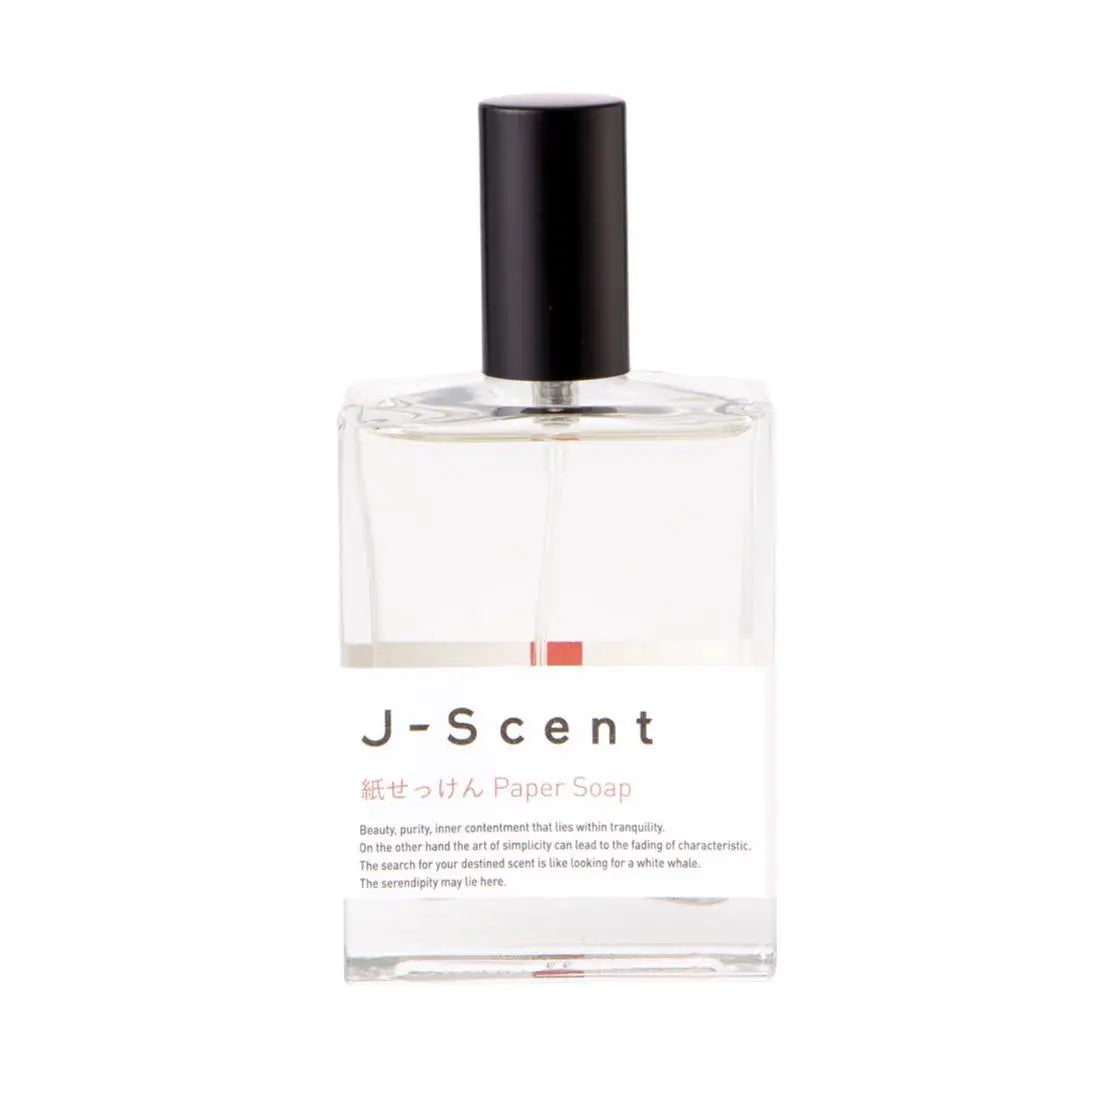 J-scent Jabón de Papel - 50 ml